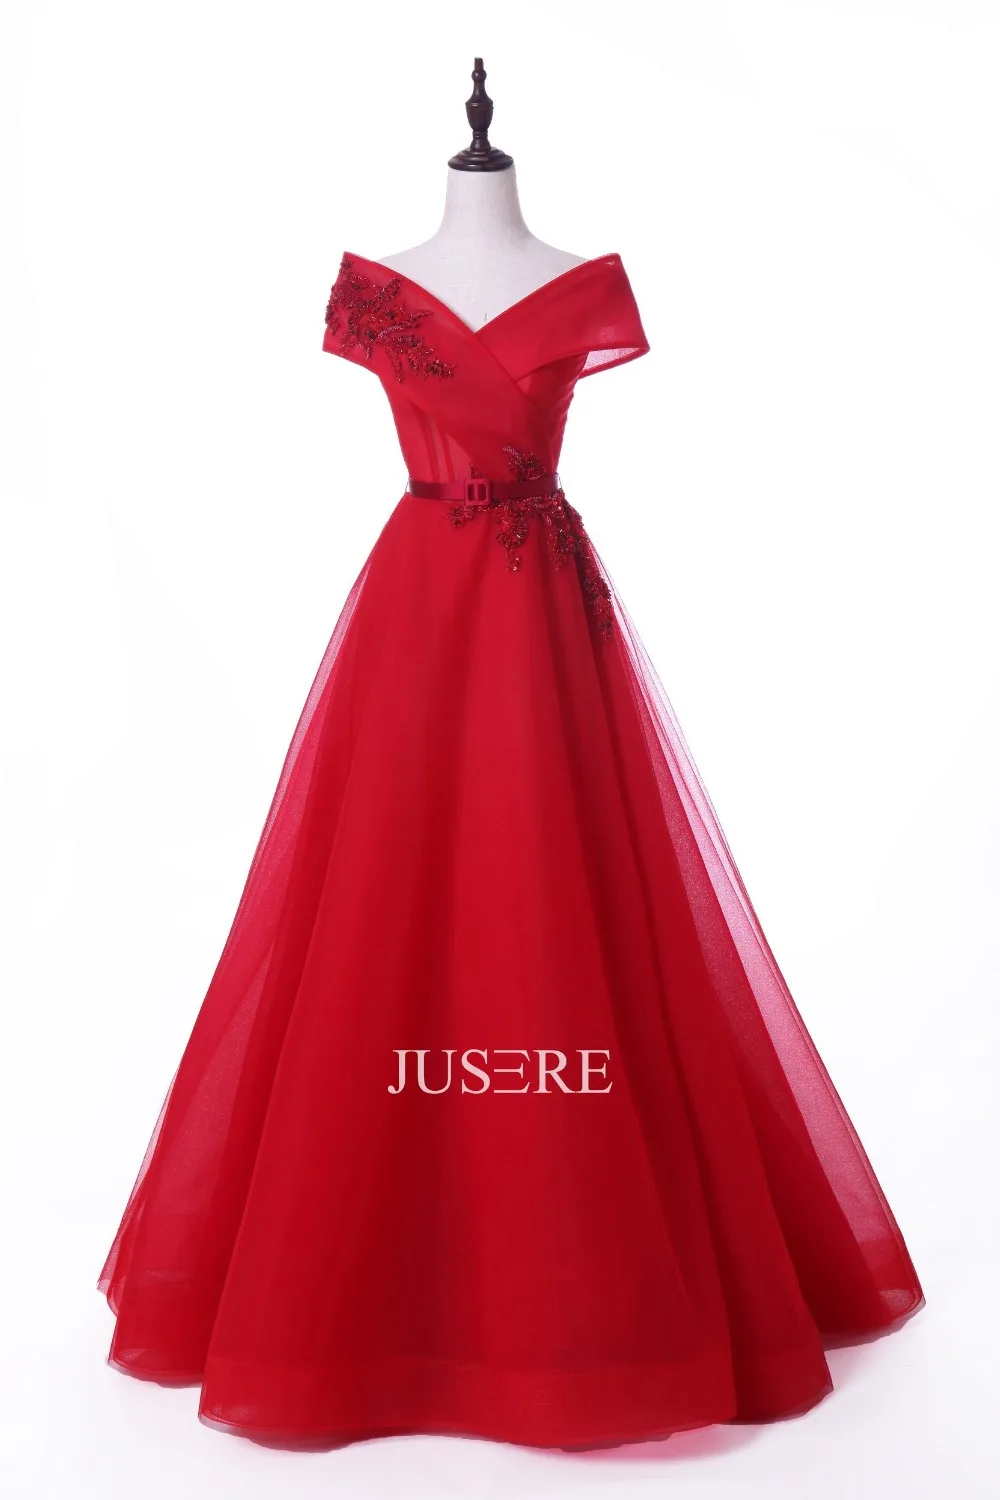 Весна-лето 2019 Jusere Haute Couture бисеры аппликации A-силуэта вечерние платья с рукавами-крылышками из Красного Тюля